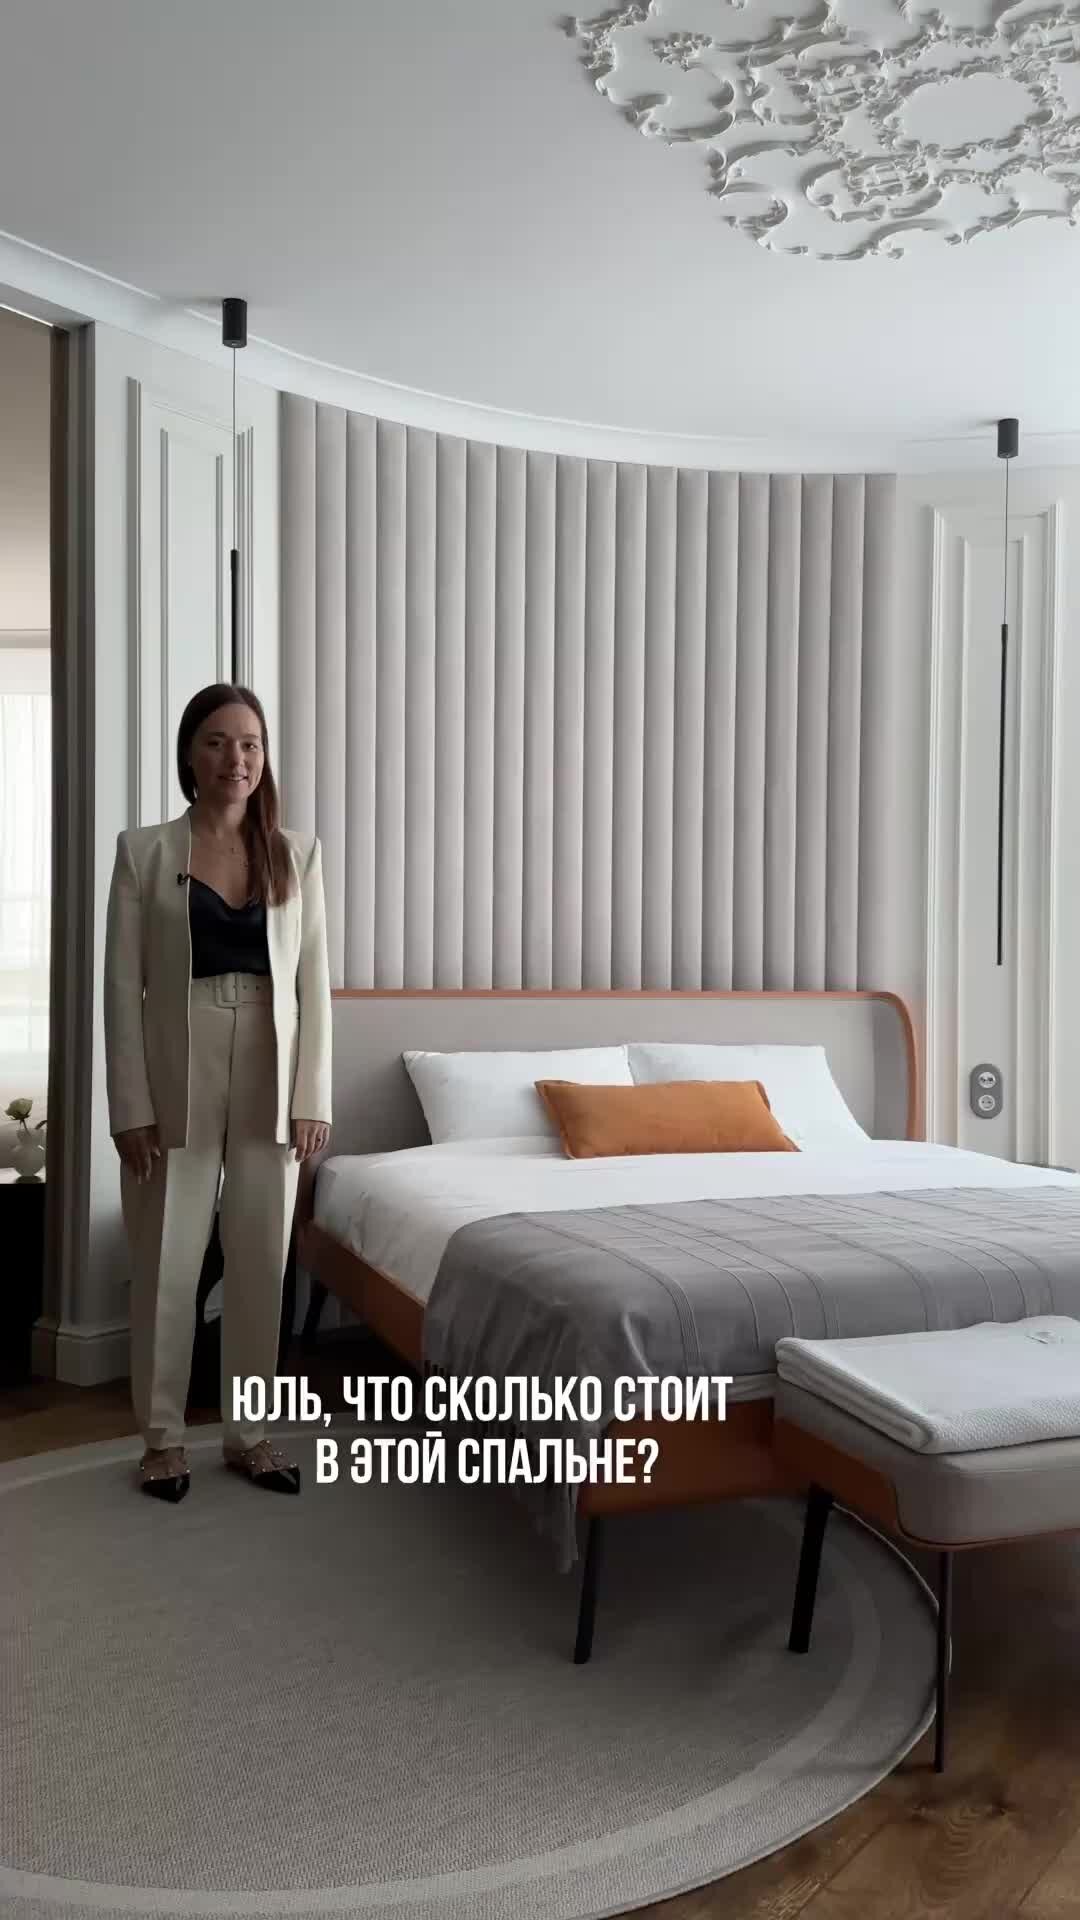 Дизайн спальни в квартире 25 фото, идеи для оформления